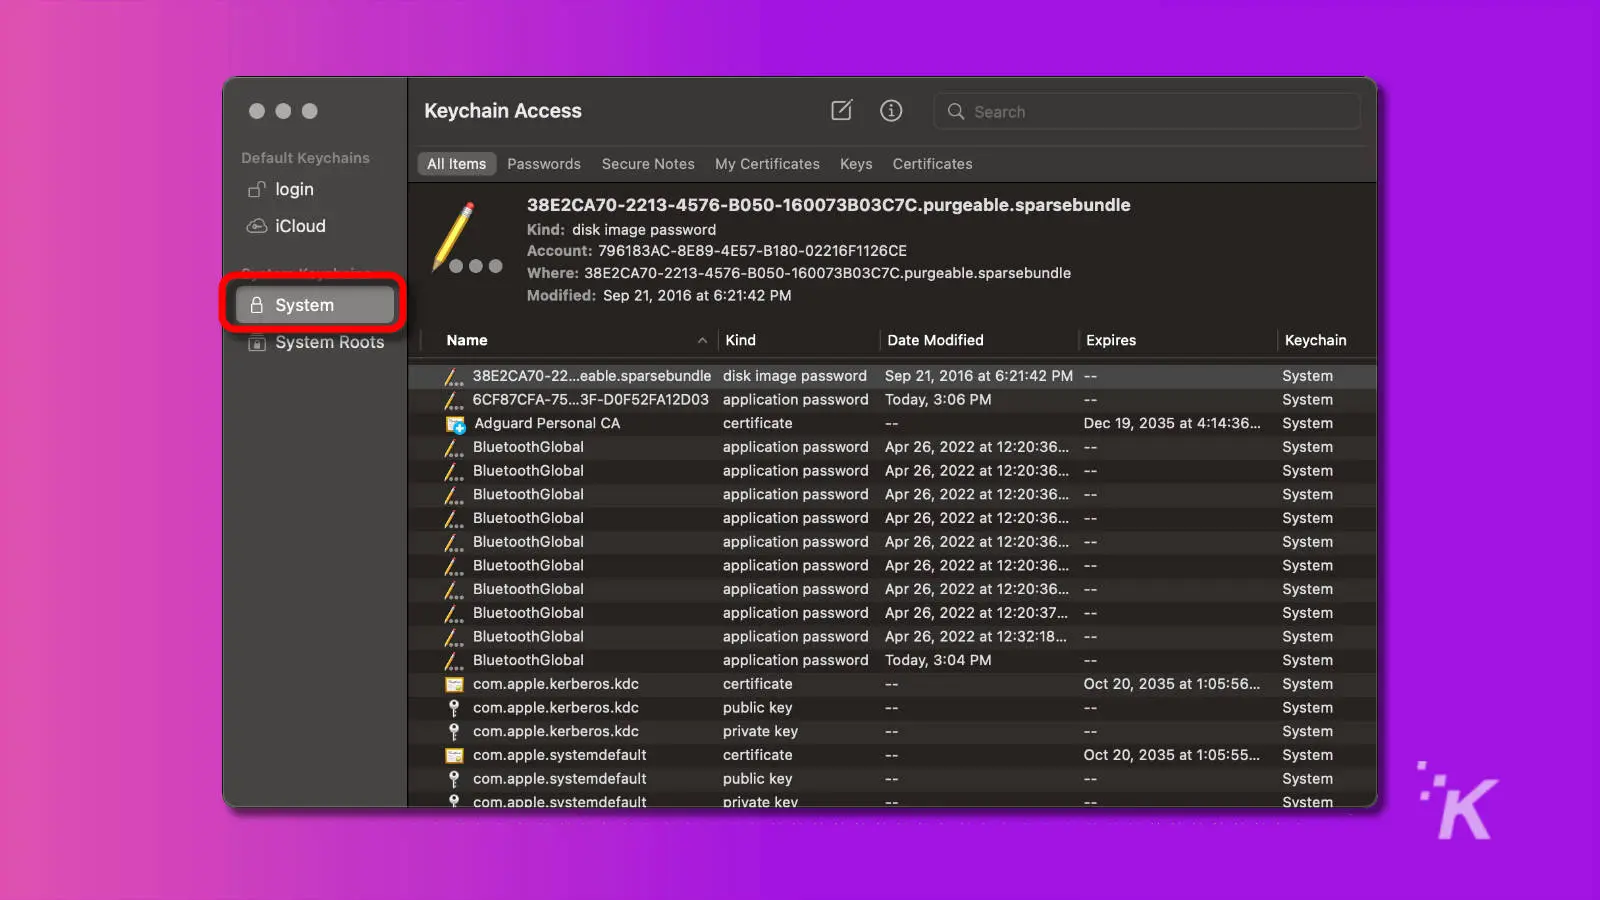 captura de pantalla de la aplicación de acceso al llavero macos con el sistema resaltado